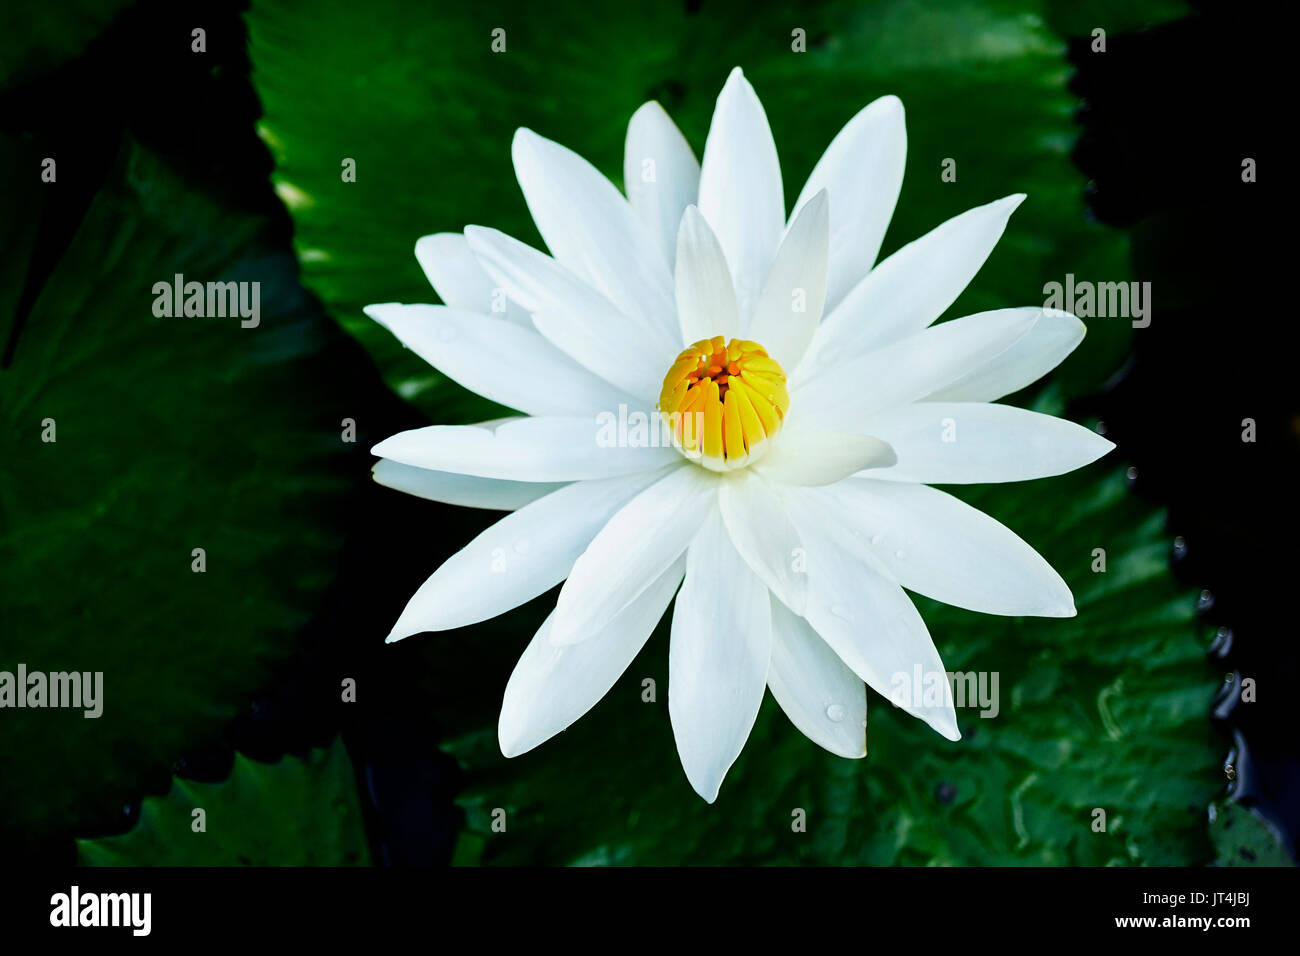 Nahaufnahme einer offenen Lotus Blume mit weißen Blütenblättern und geschlossene gelbe Kern in einem dunklen See mit grünen Blättern. Stockfoto